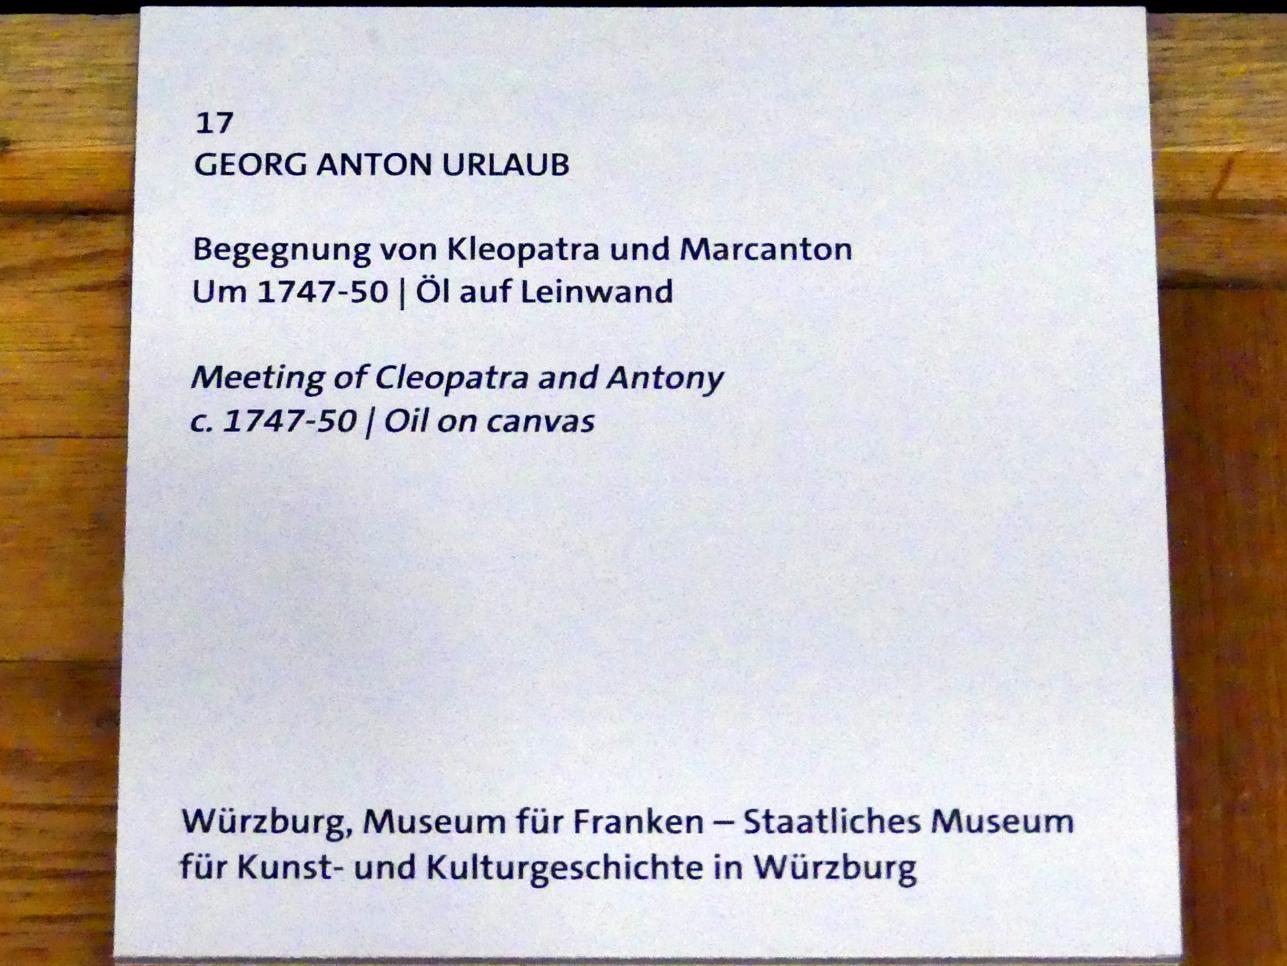 Georg Anton Urlaub (1735–1758), Begegnung von Kleopatra und Marcanton, Würzburg, Martin von Wagner Museum, Ausstellung "Tiepolo und seine Zeit in Würzburg" vom 31.10.2020-15.07.2021, Saal 1, um 1747–1750, Bild 2/2